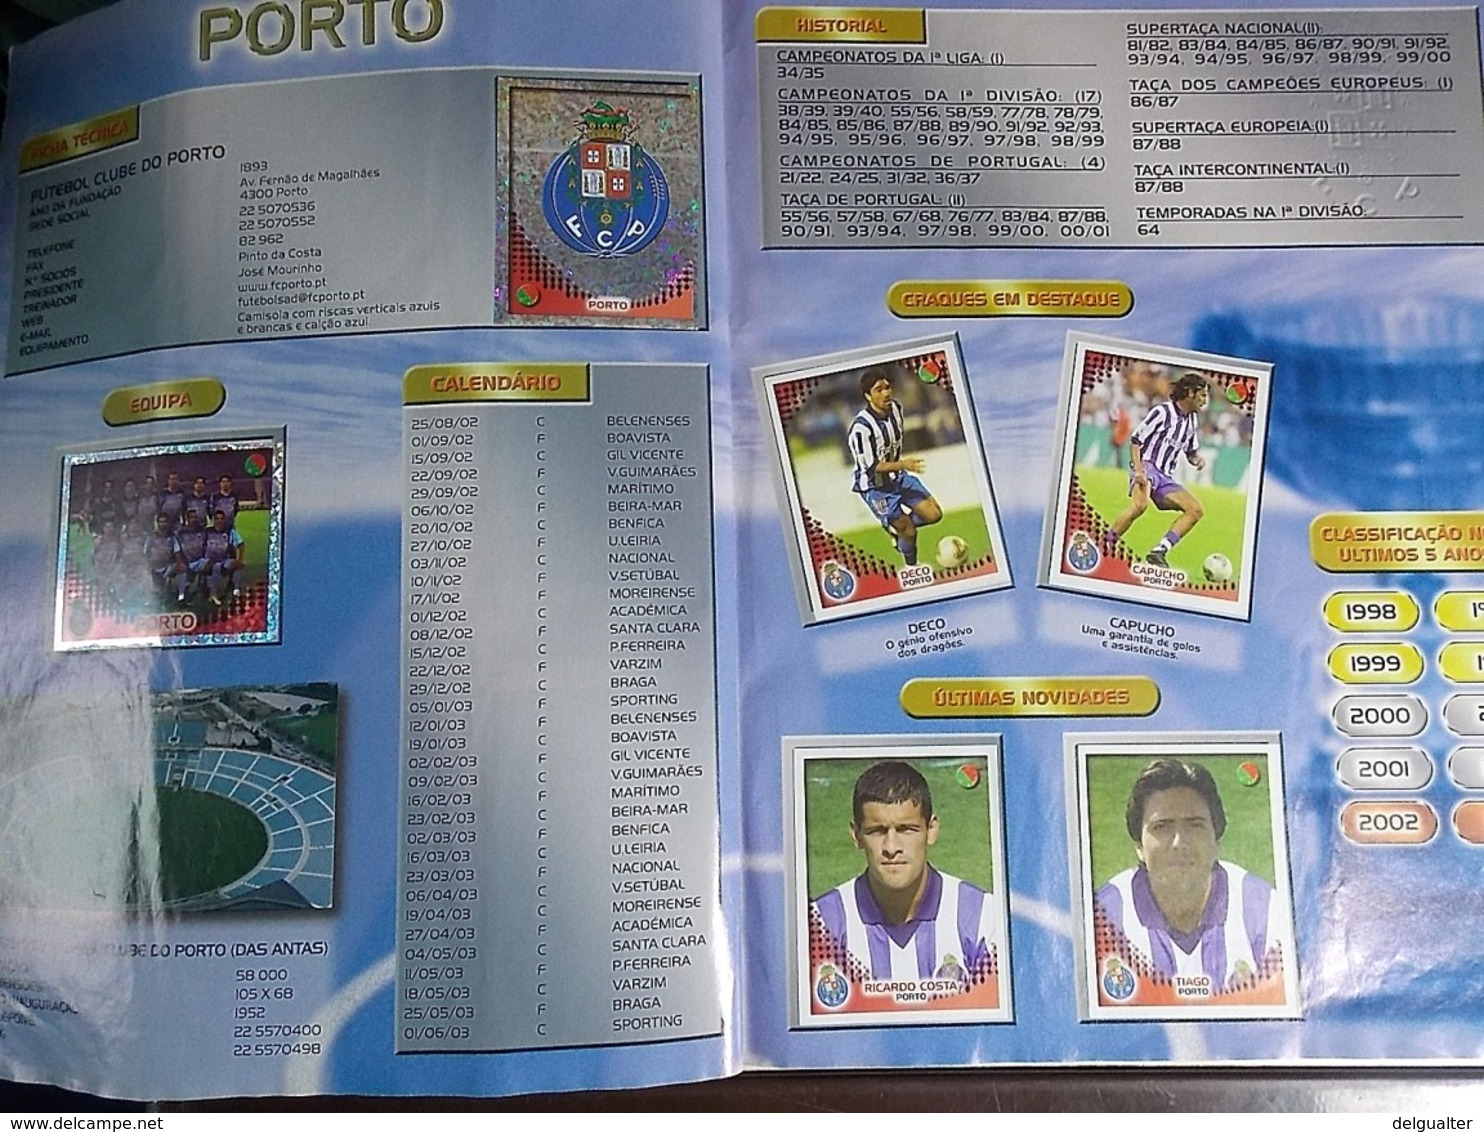 Panini * Stickers Album * Futebol 2002-2003 Portugal * With Rare Cristiano Ronaldo Sticker * Used Album *miss 1 sticker